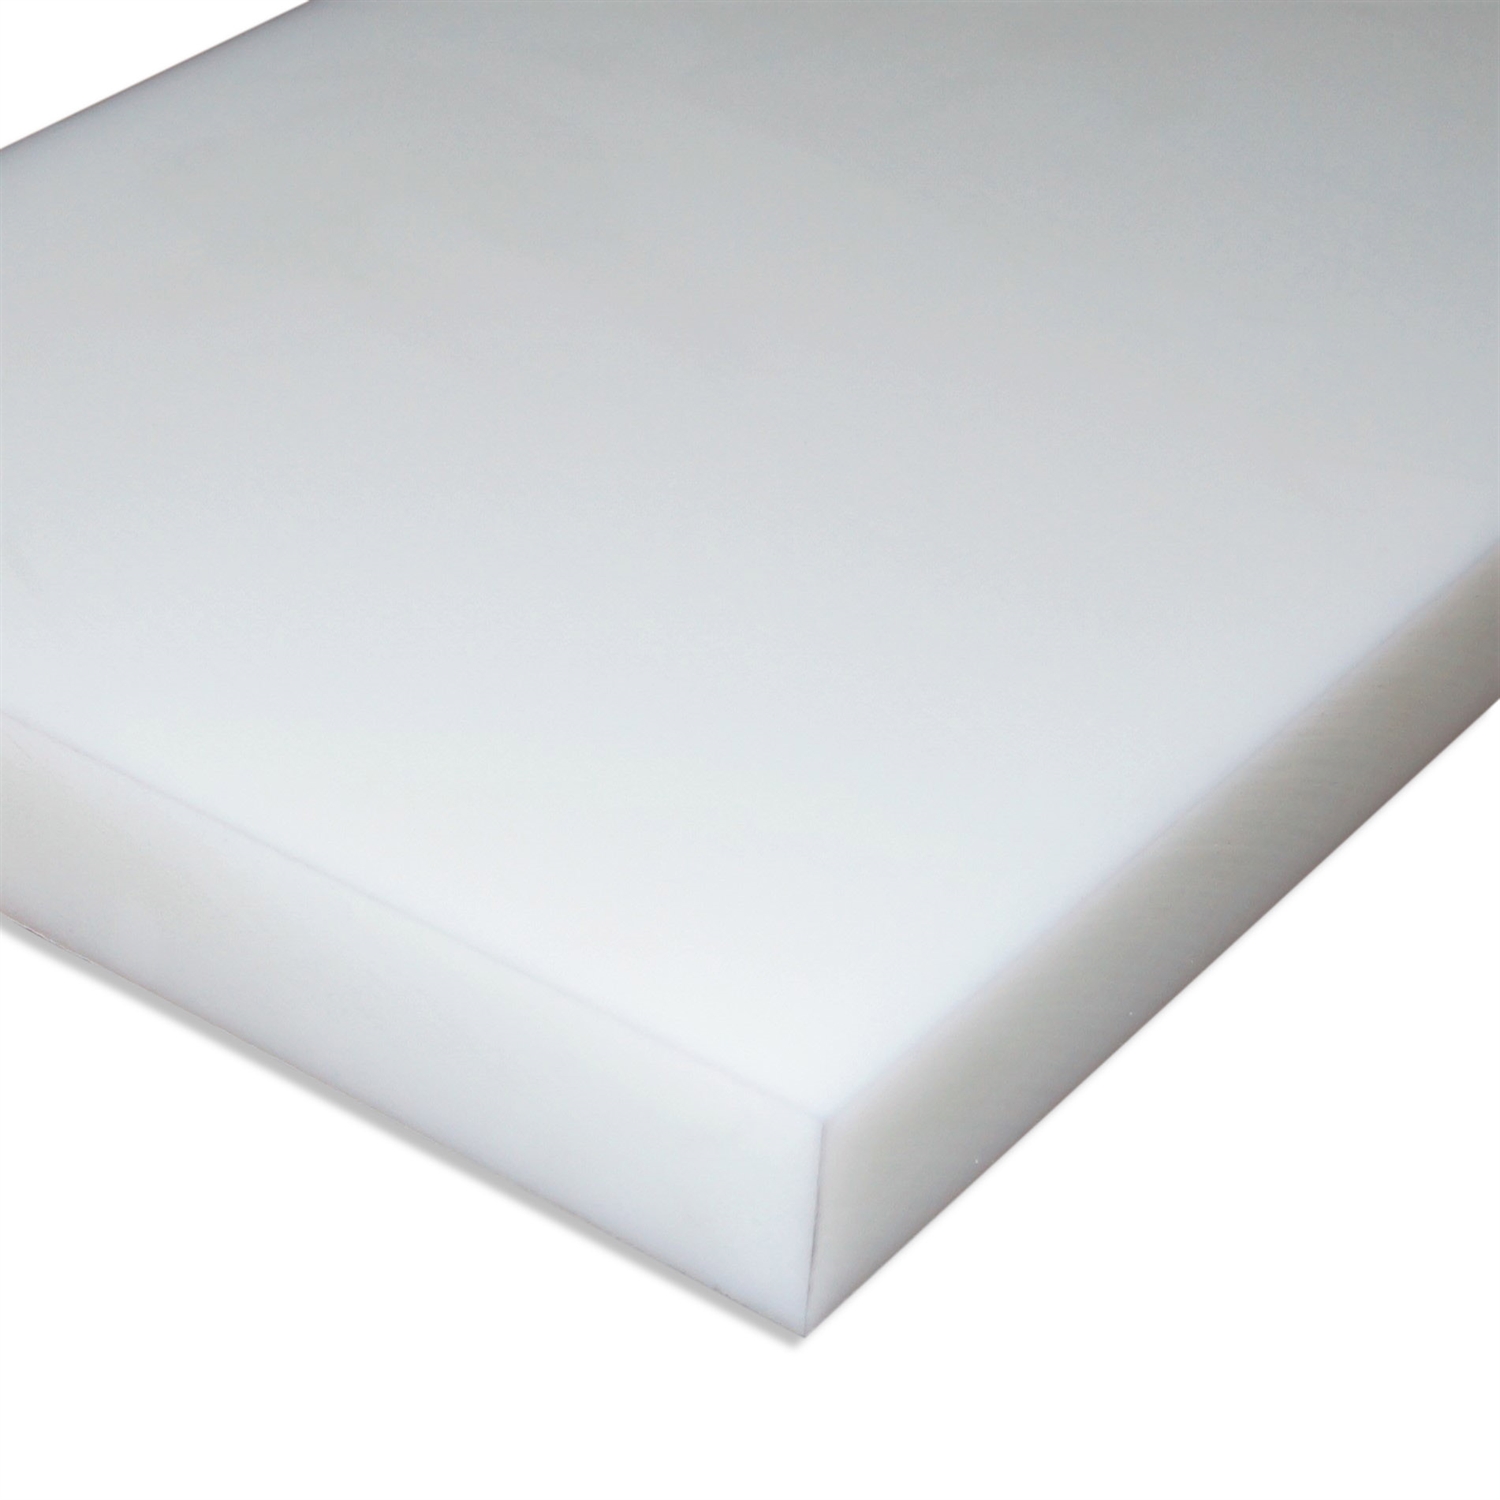 POM natur 500x245x20mm weiß Platte Zuschnitt Kunststoff Halbzeug 